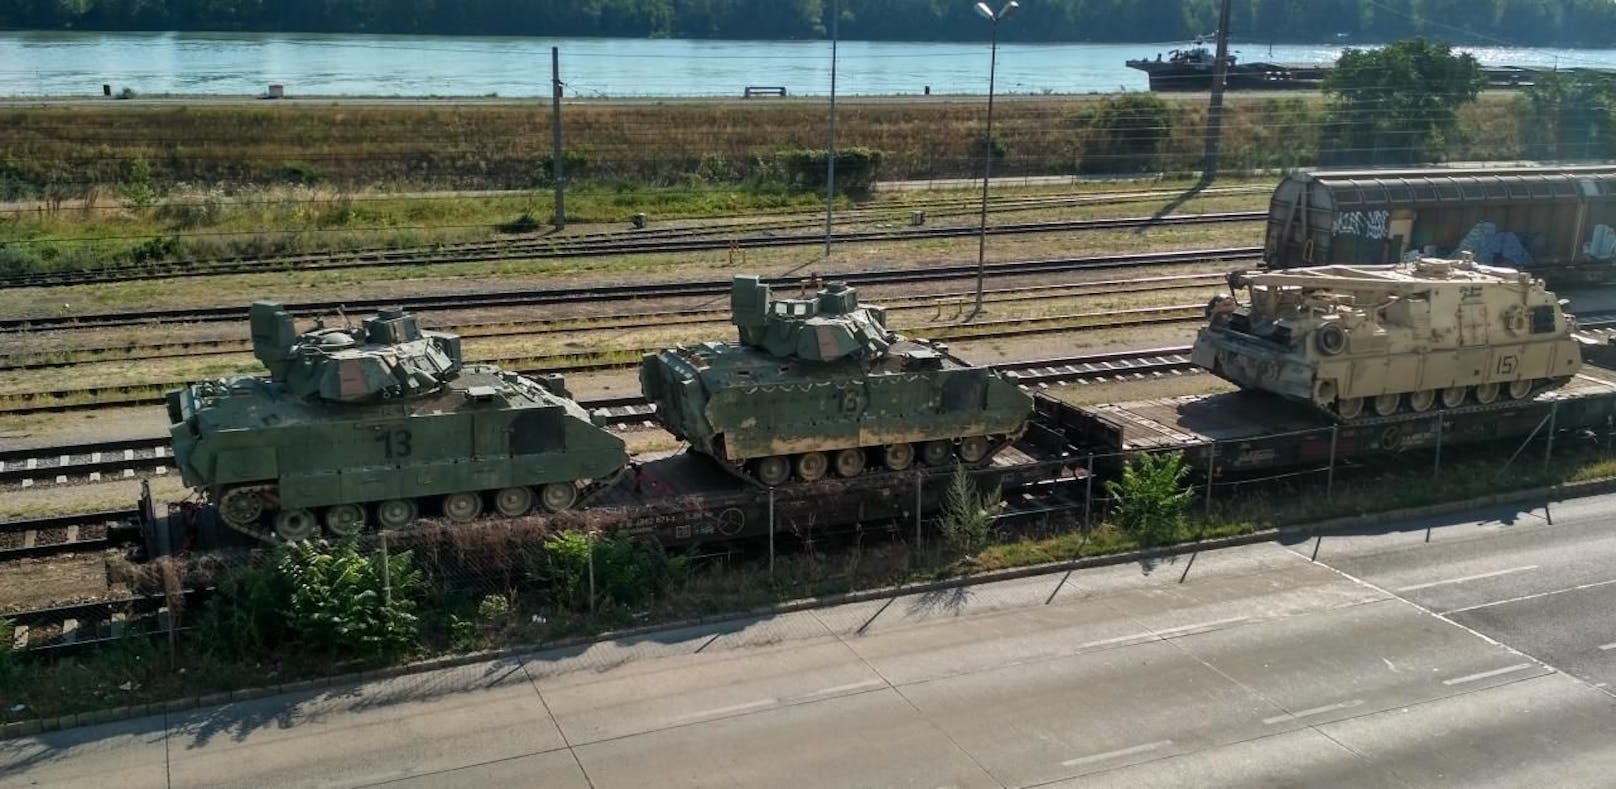 Panzer auf Schiene: Leserreporter C. fotografierte sie am Handelskai.